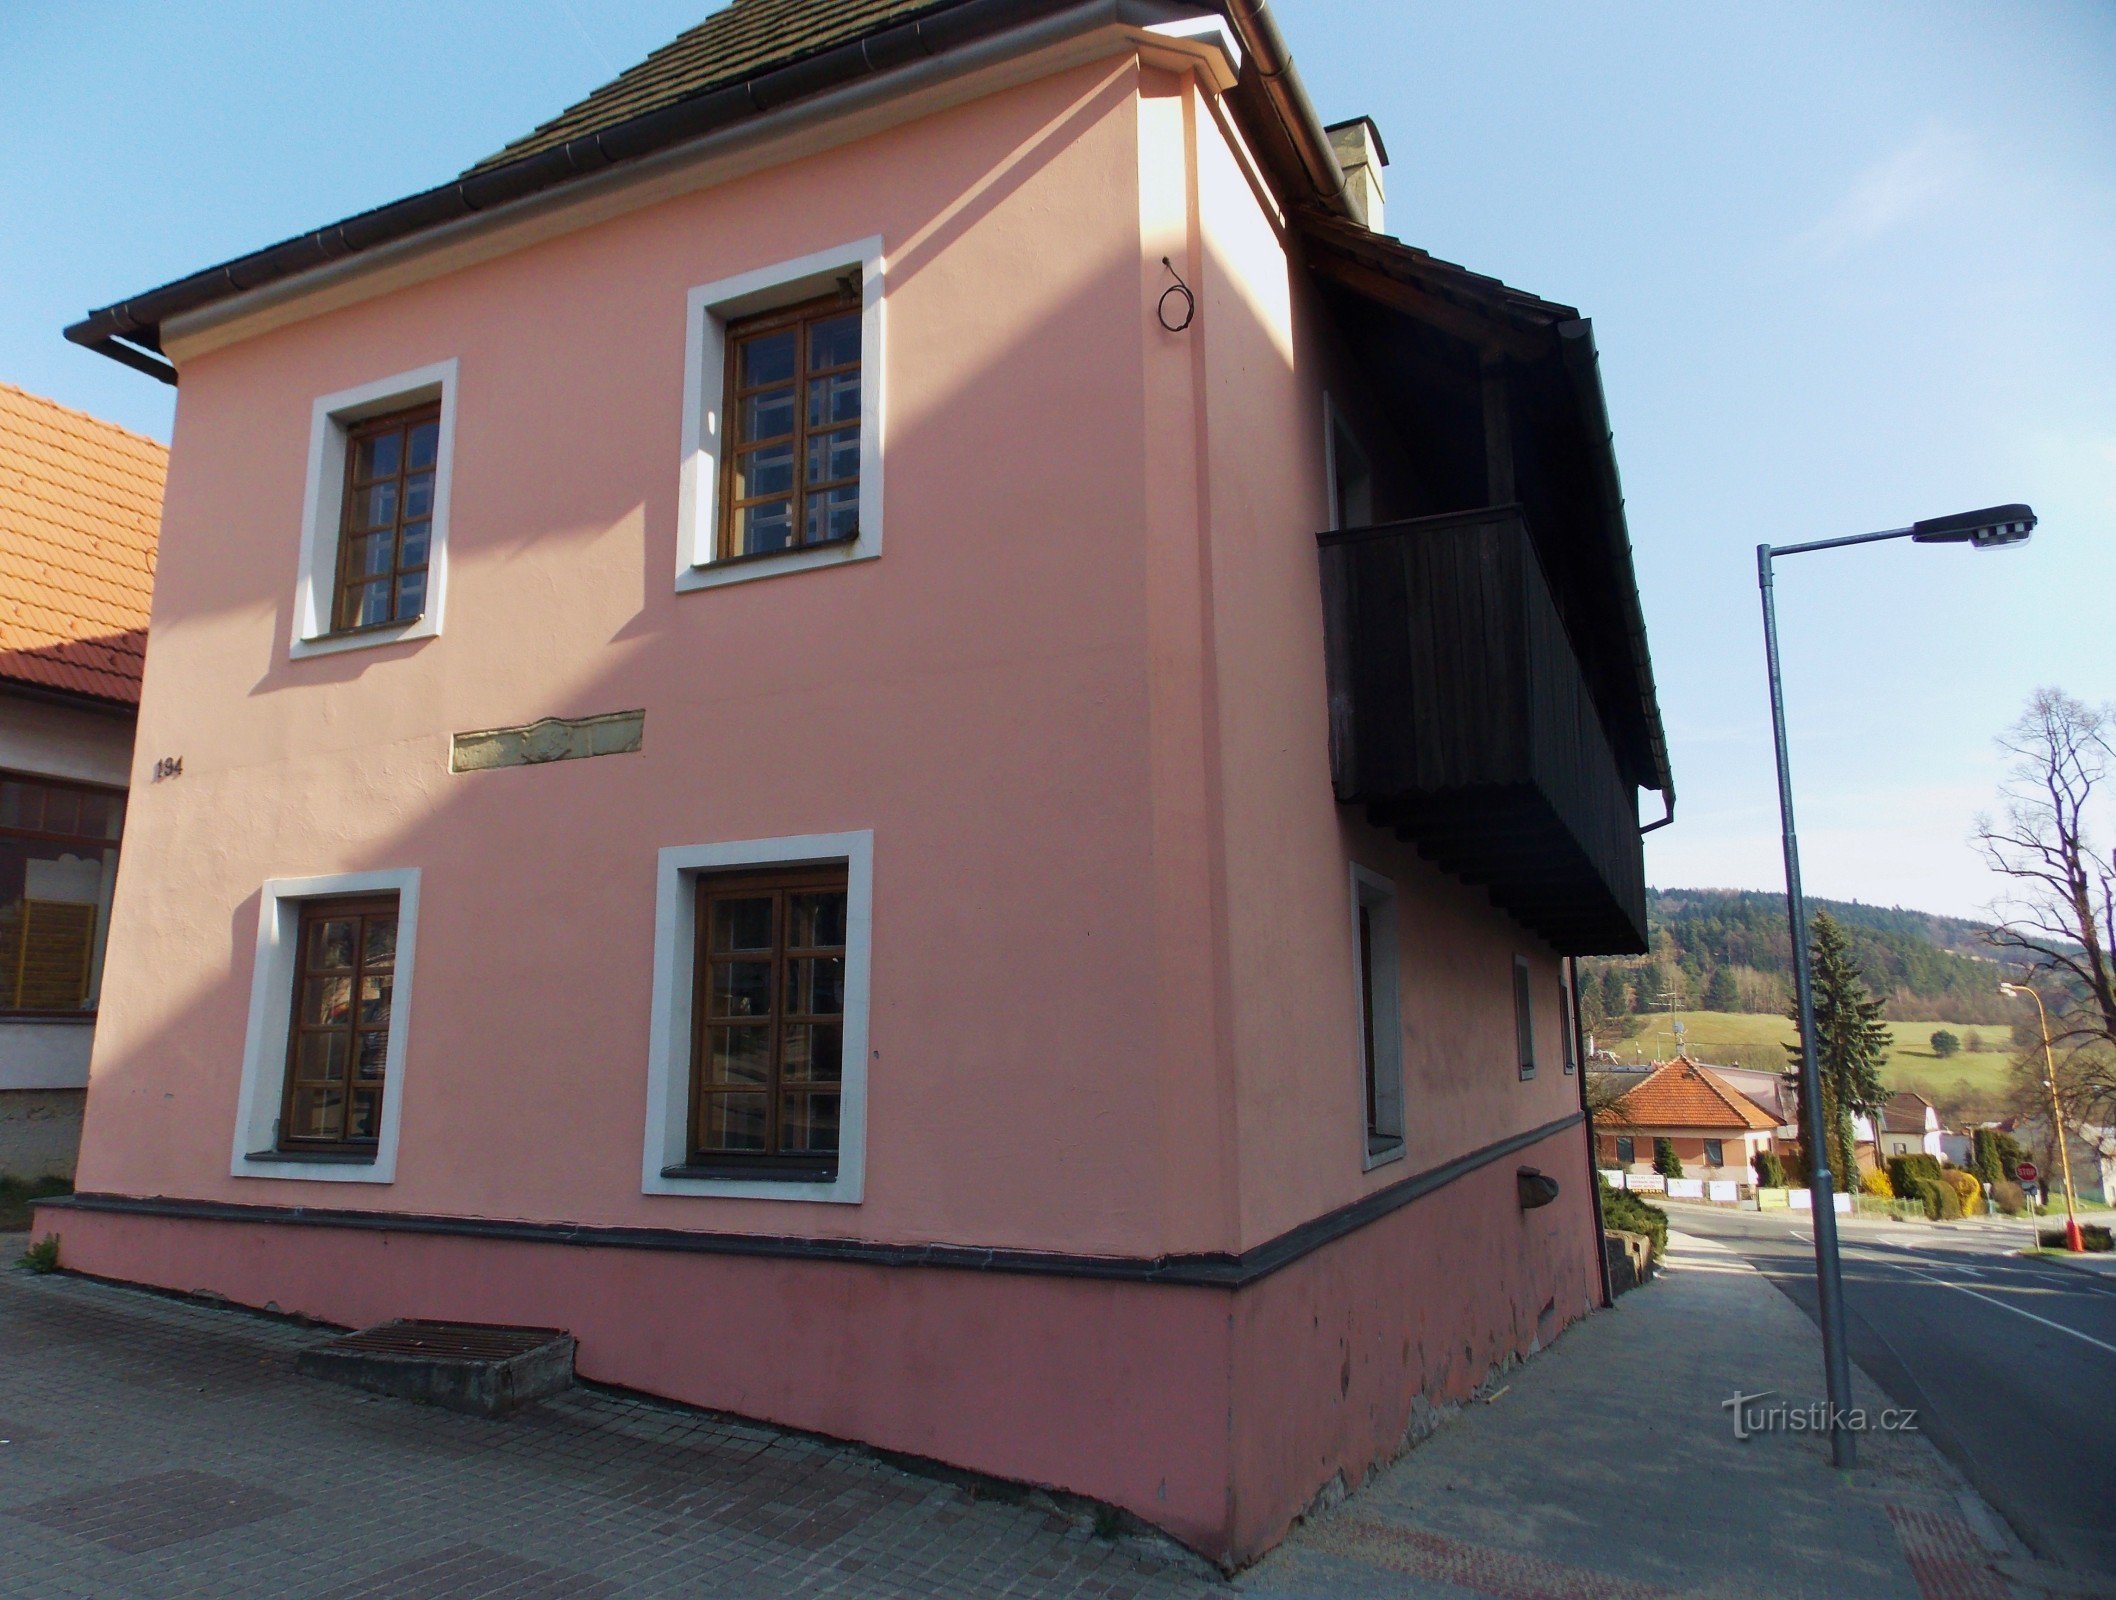 红房子，Valašské Klobouky 博物馆的第二个对象